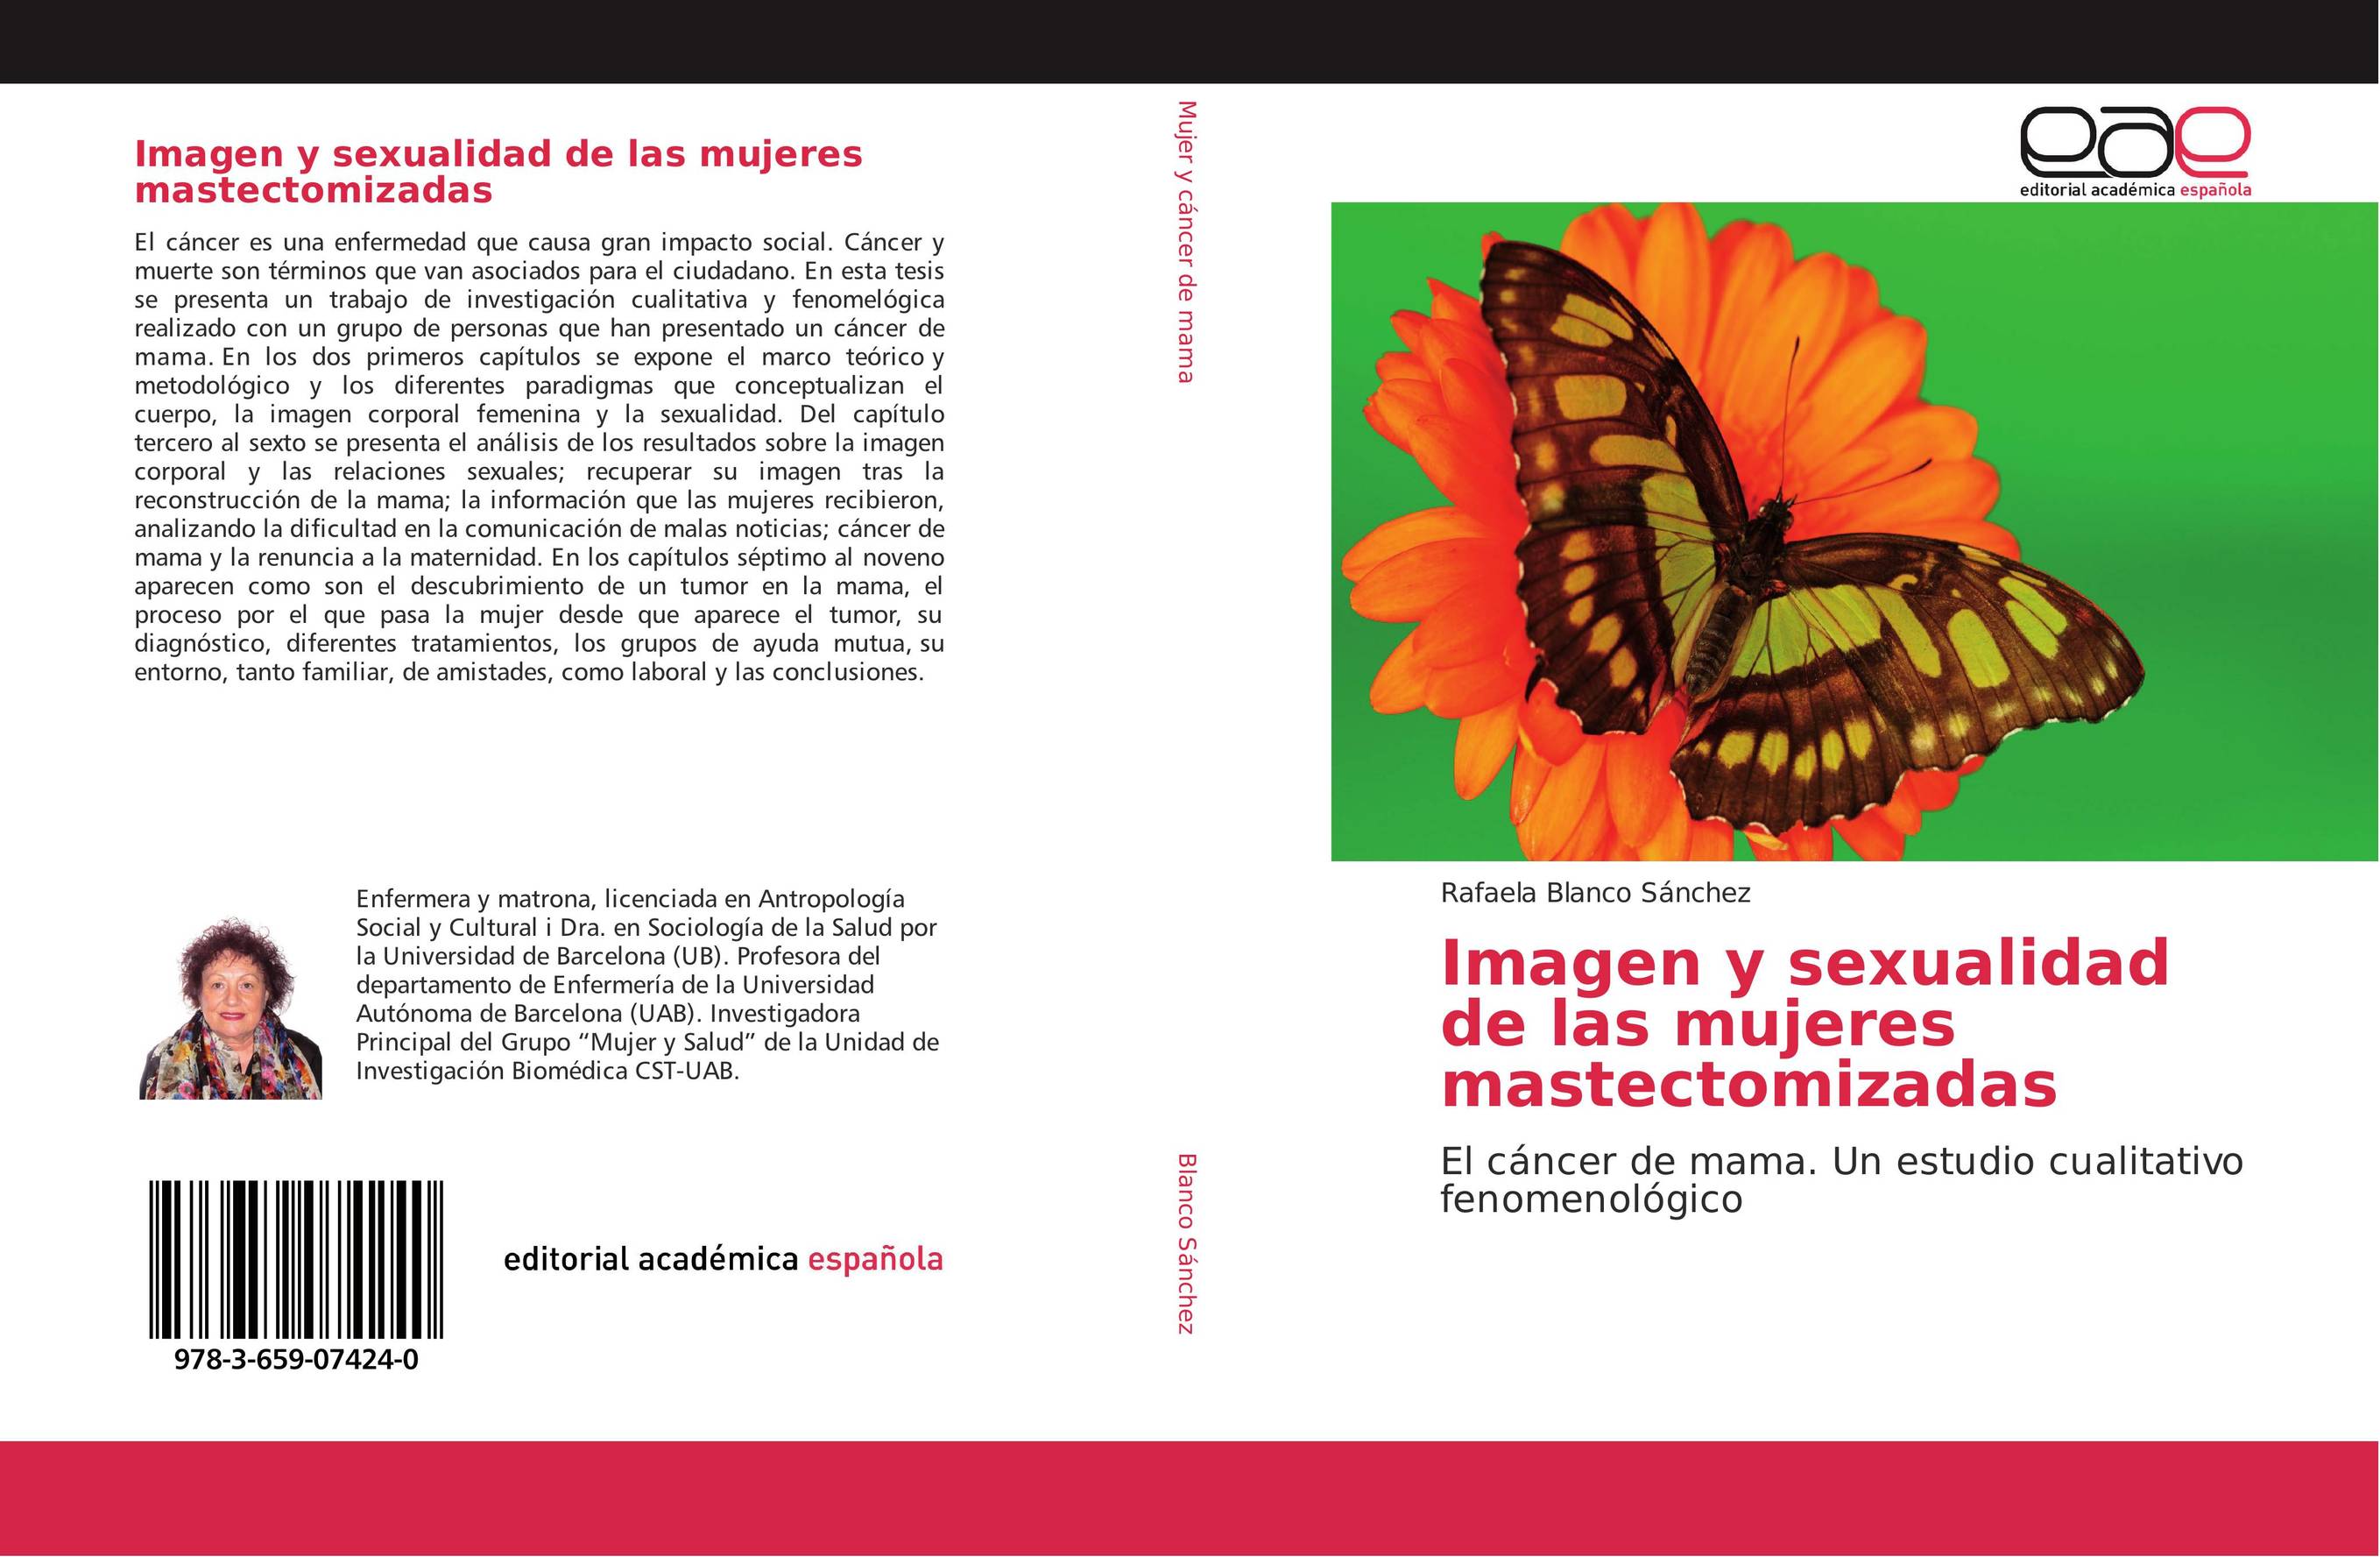 Imagen y sexualidad de las mujeres mastectomizadas